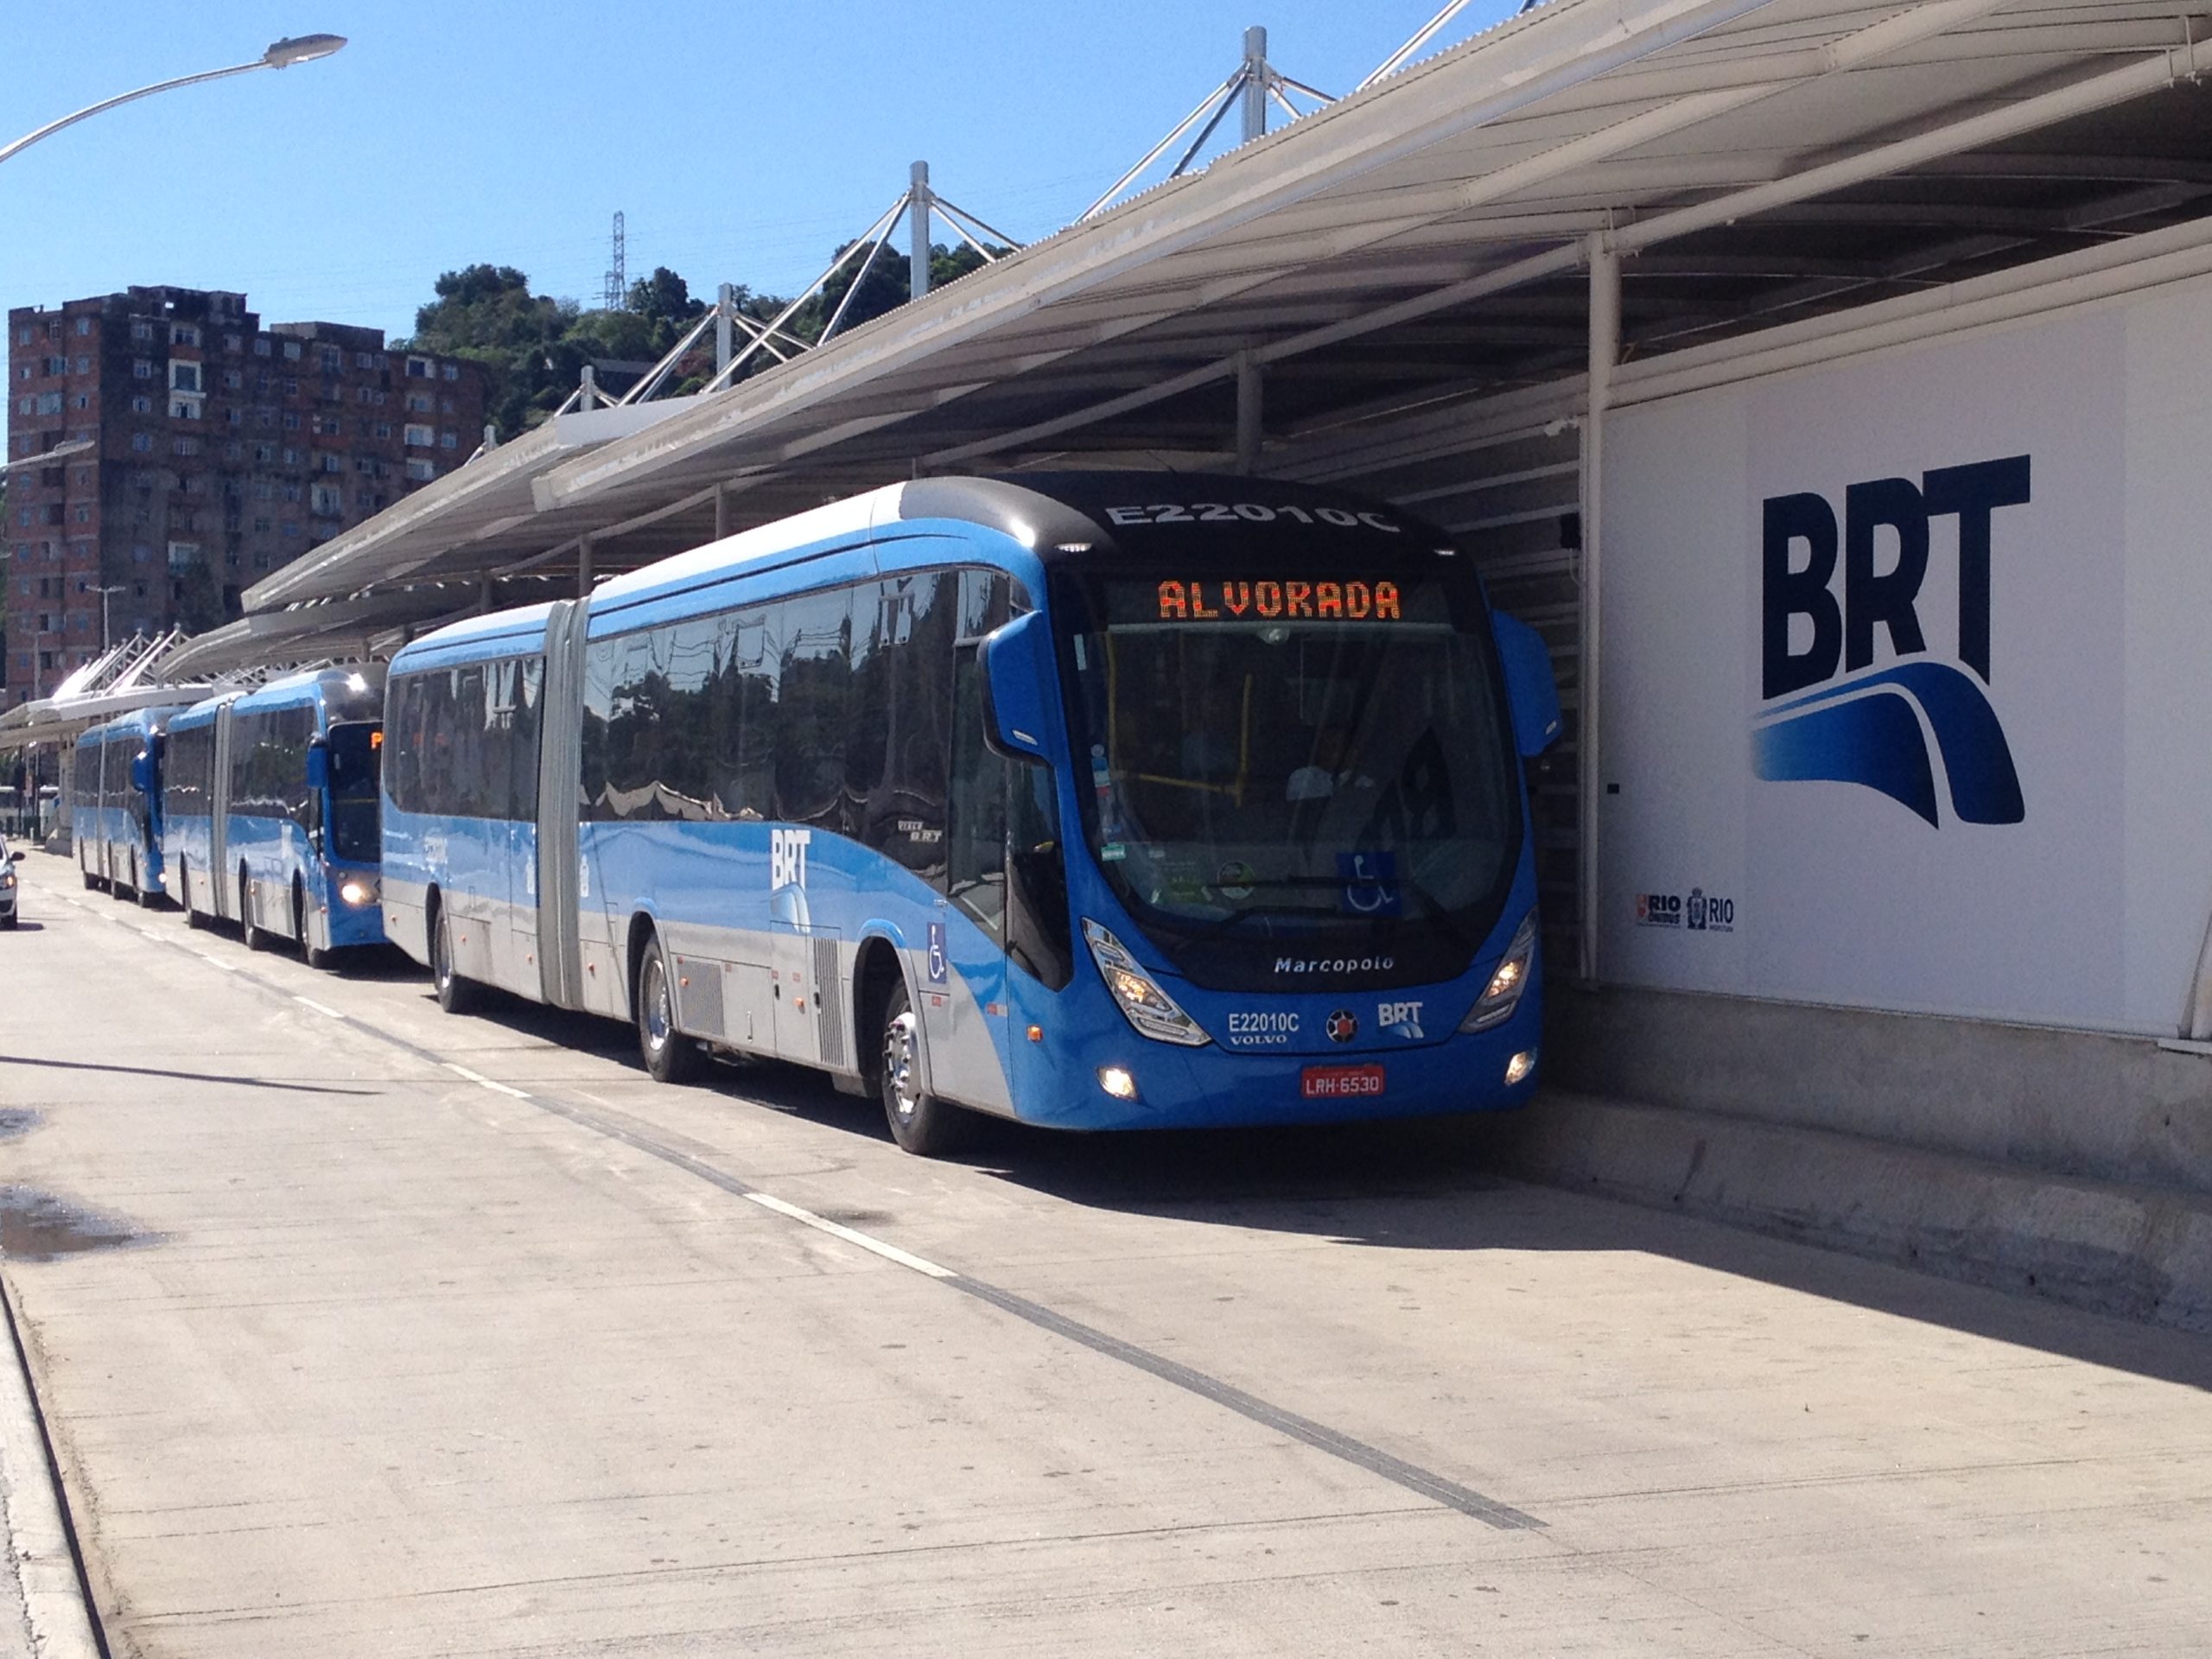 Imagem de um ônibus articulado do BRT